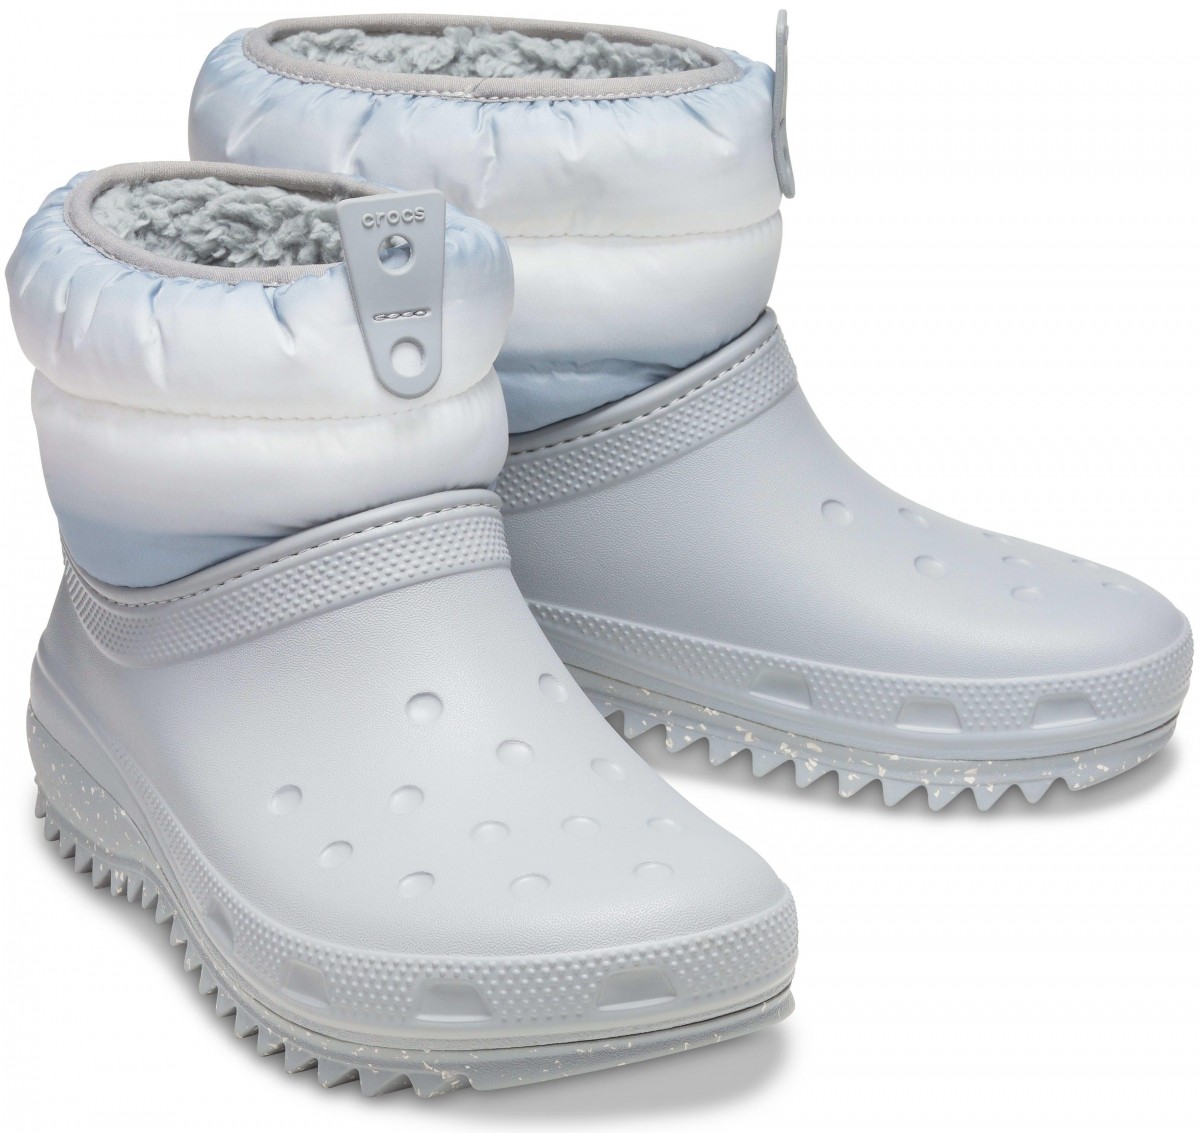 V teple a v suchu s dámskými sněhulemi Crocs Classic Neo Puff Shorty Boot!